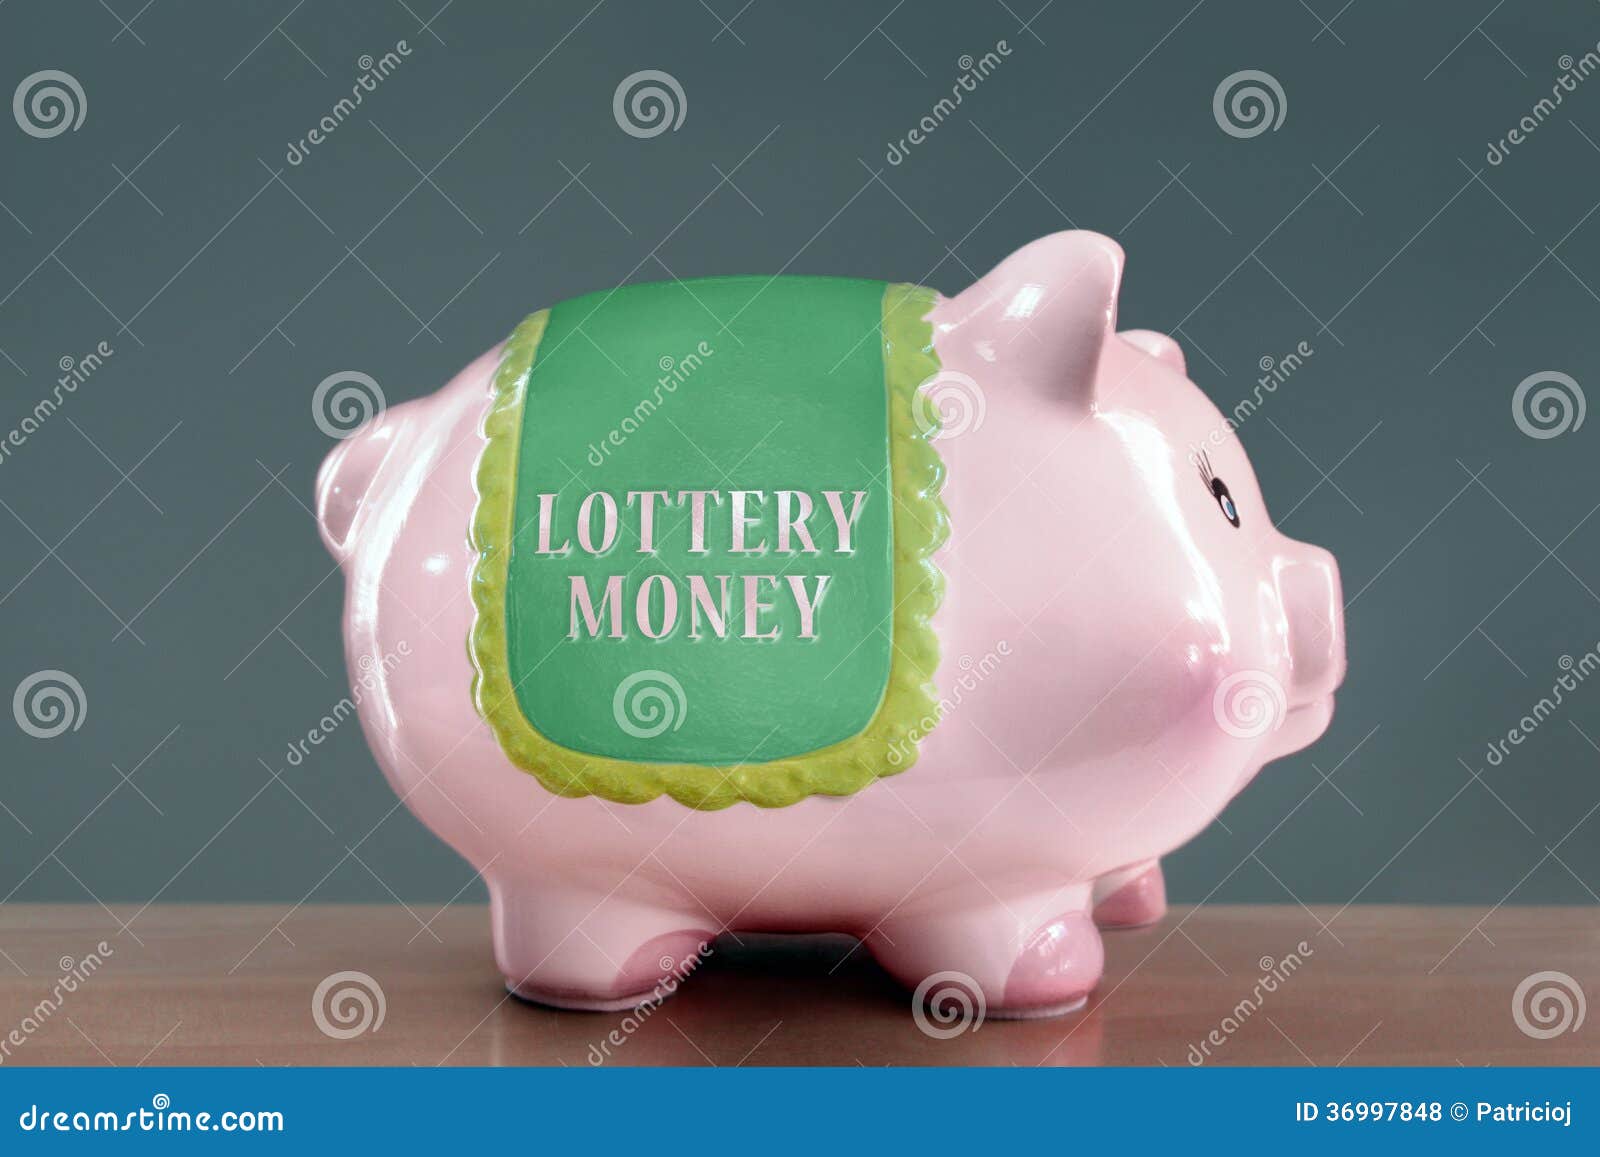 lottery money piggy bank